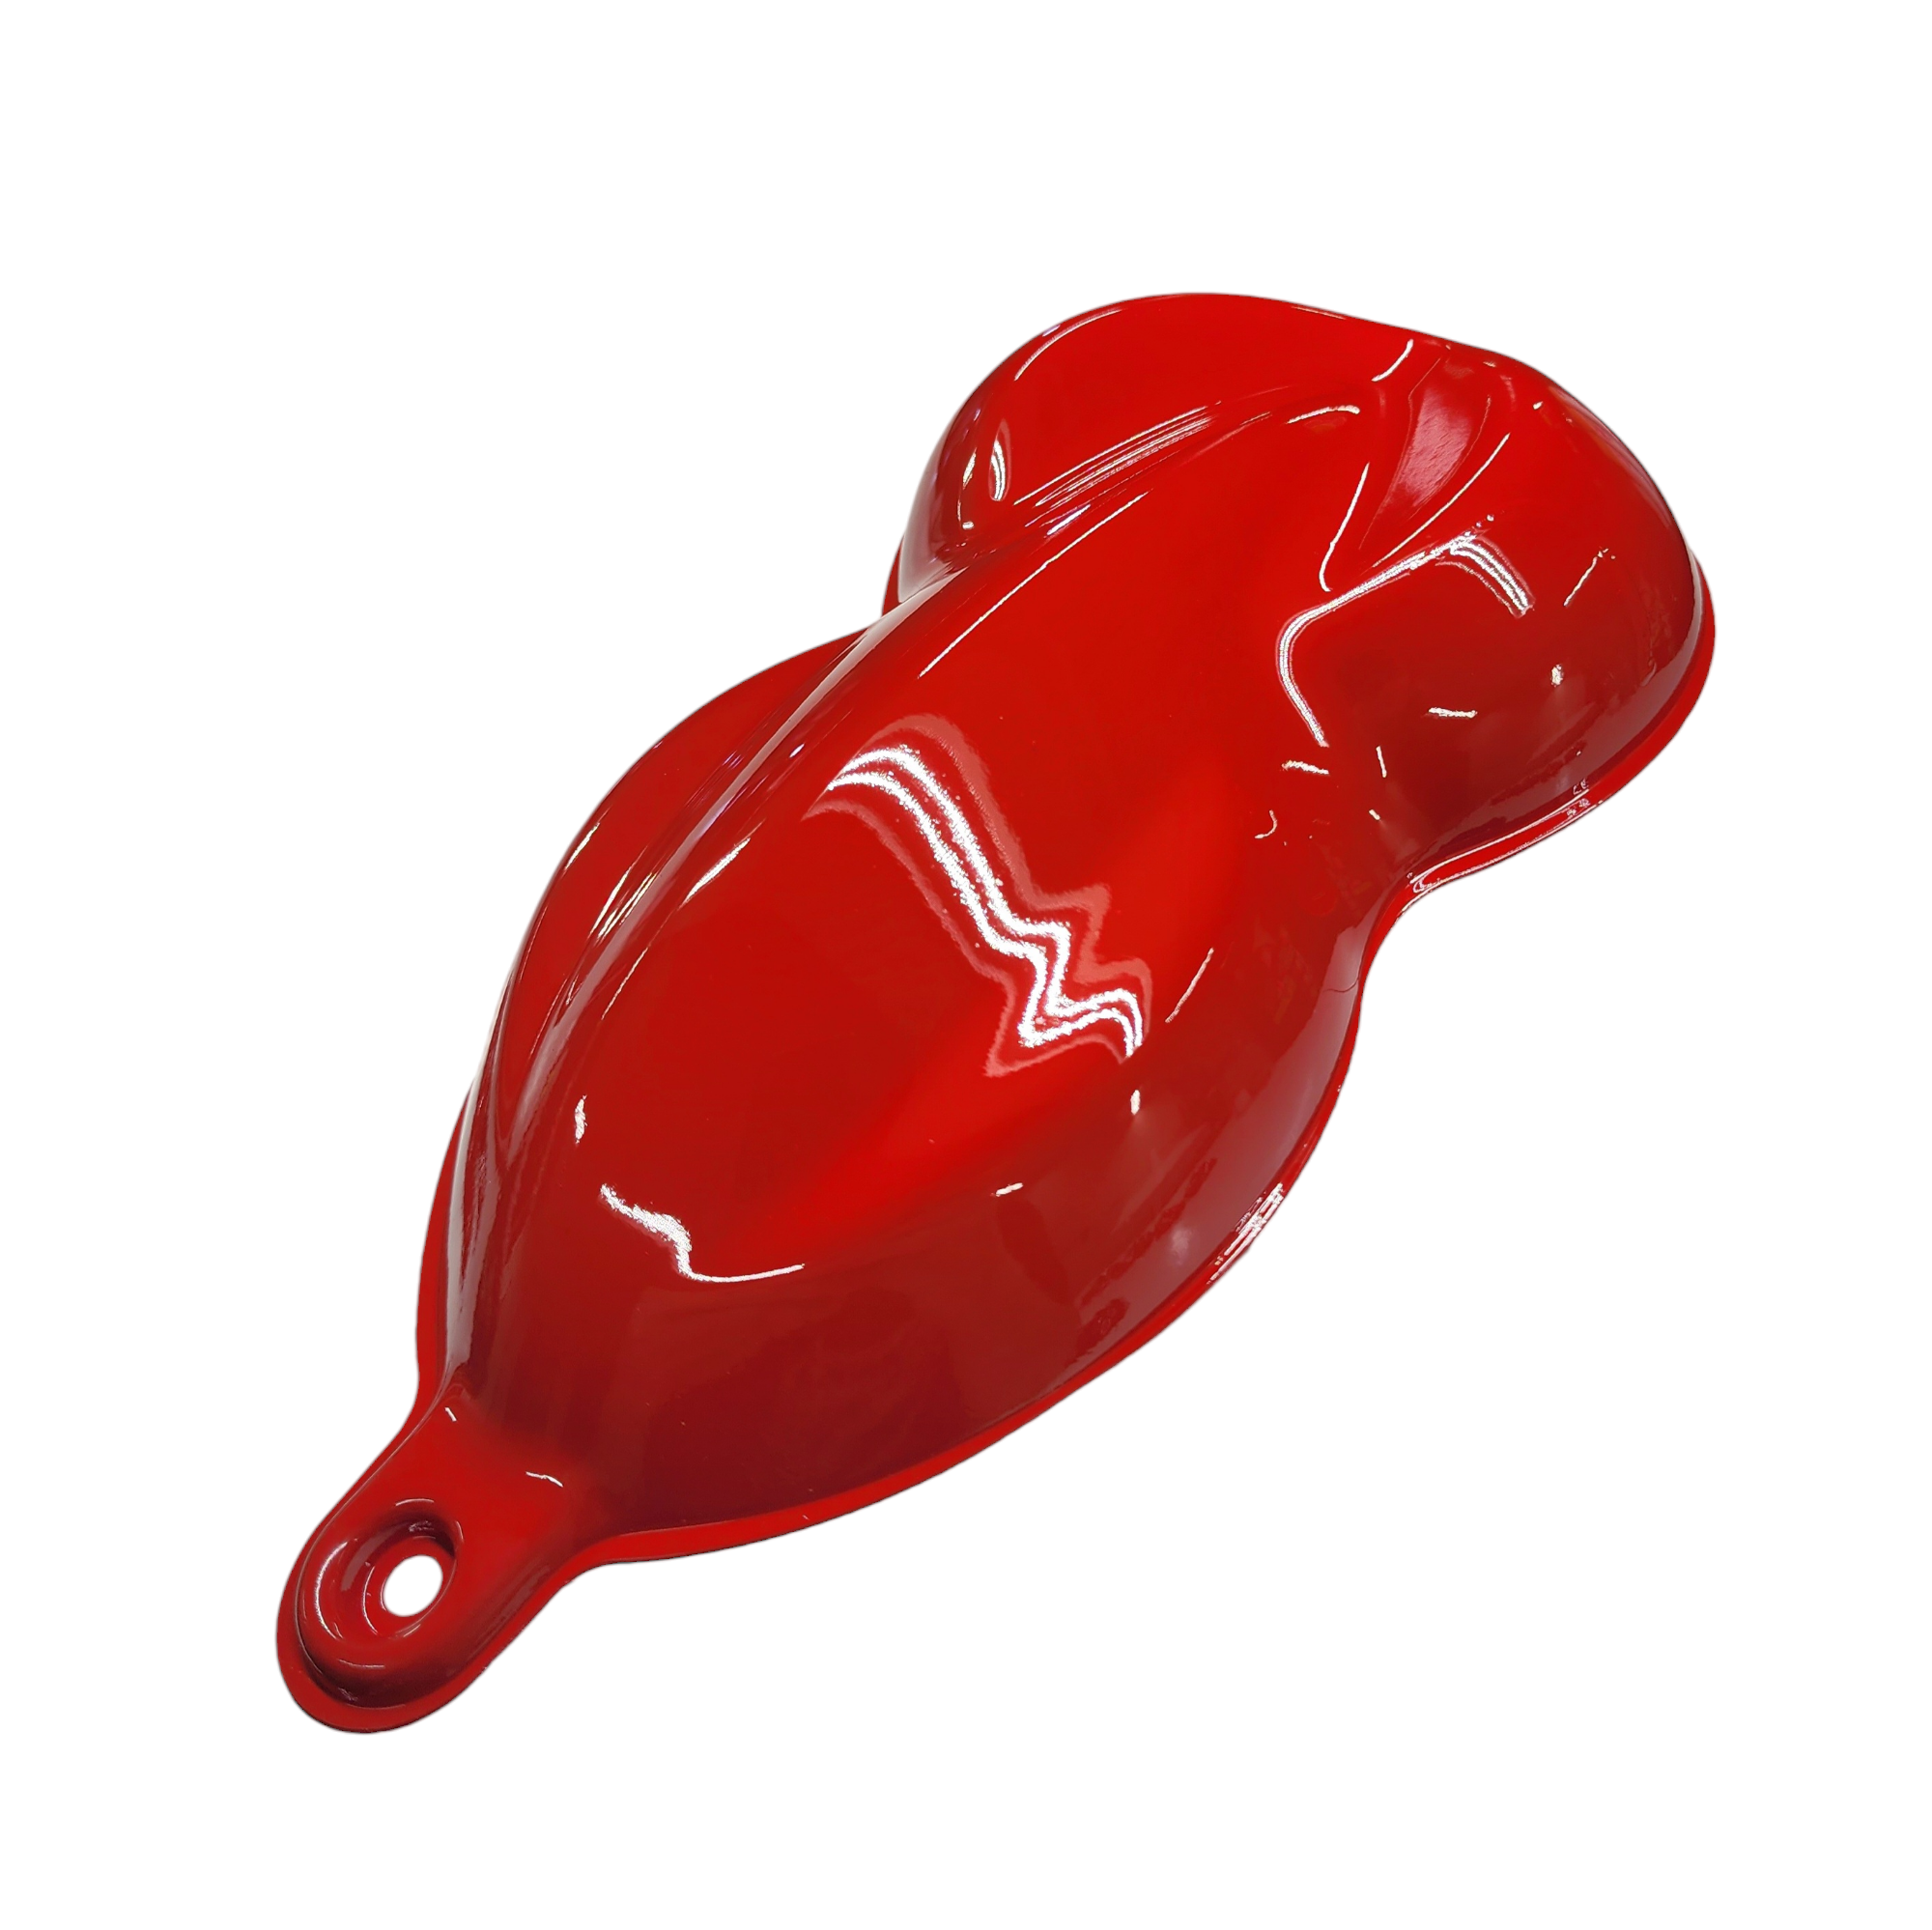 Red Enamel Plastic Model Paint